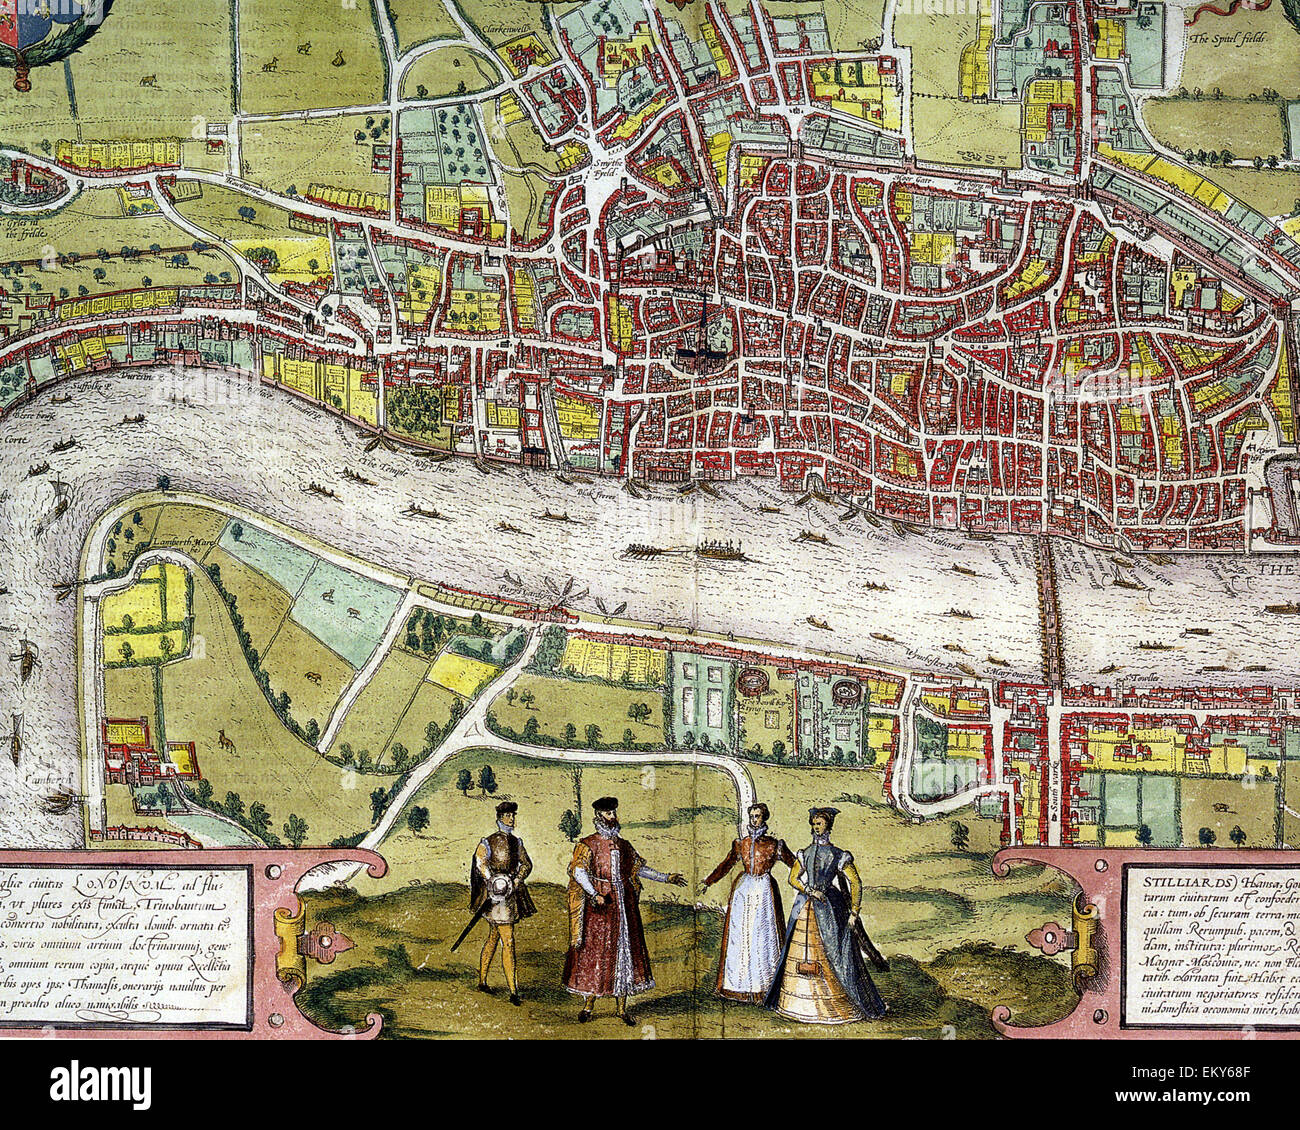 La sección central de Londres isabelino de Braun y Hogenberg's mapa impreso en 1572 Foto de stock